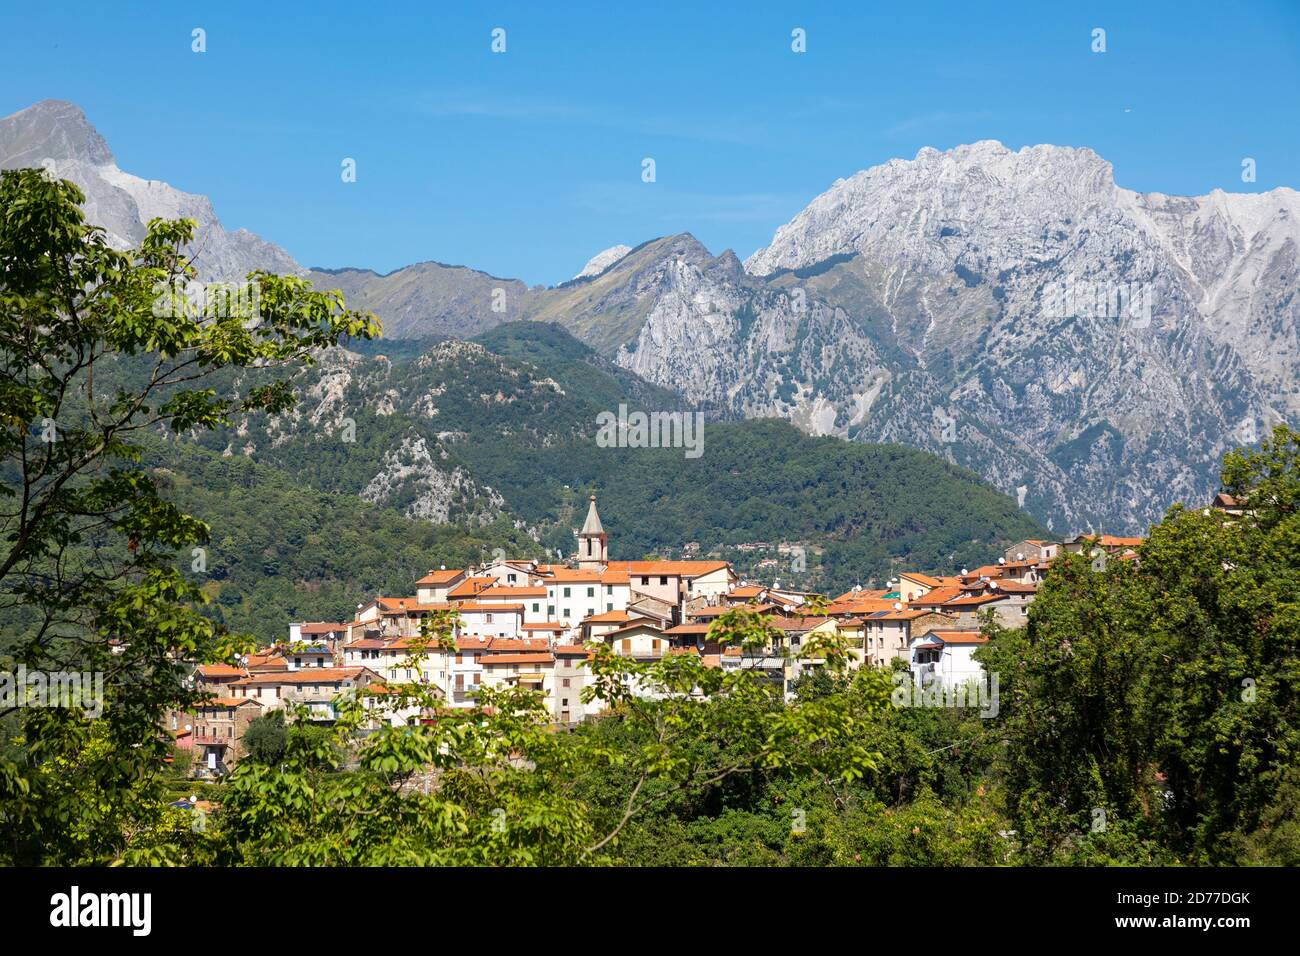 Le village de Pariana dans les Alpes Apuanes, Italie Banque D'Images